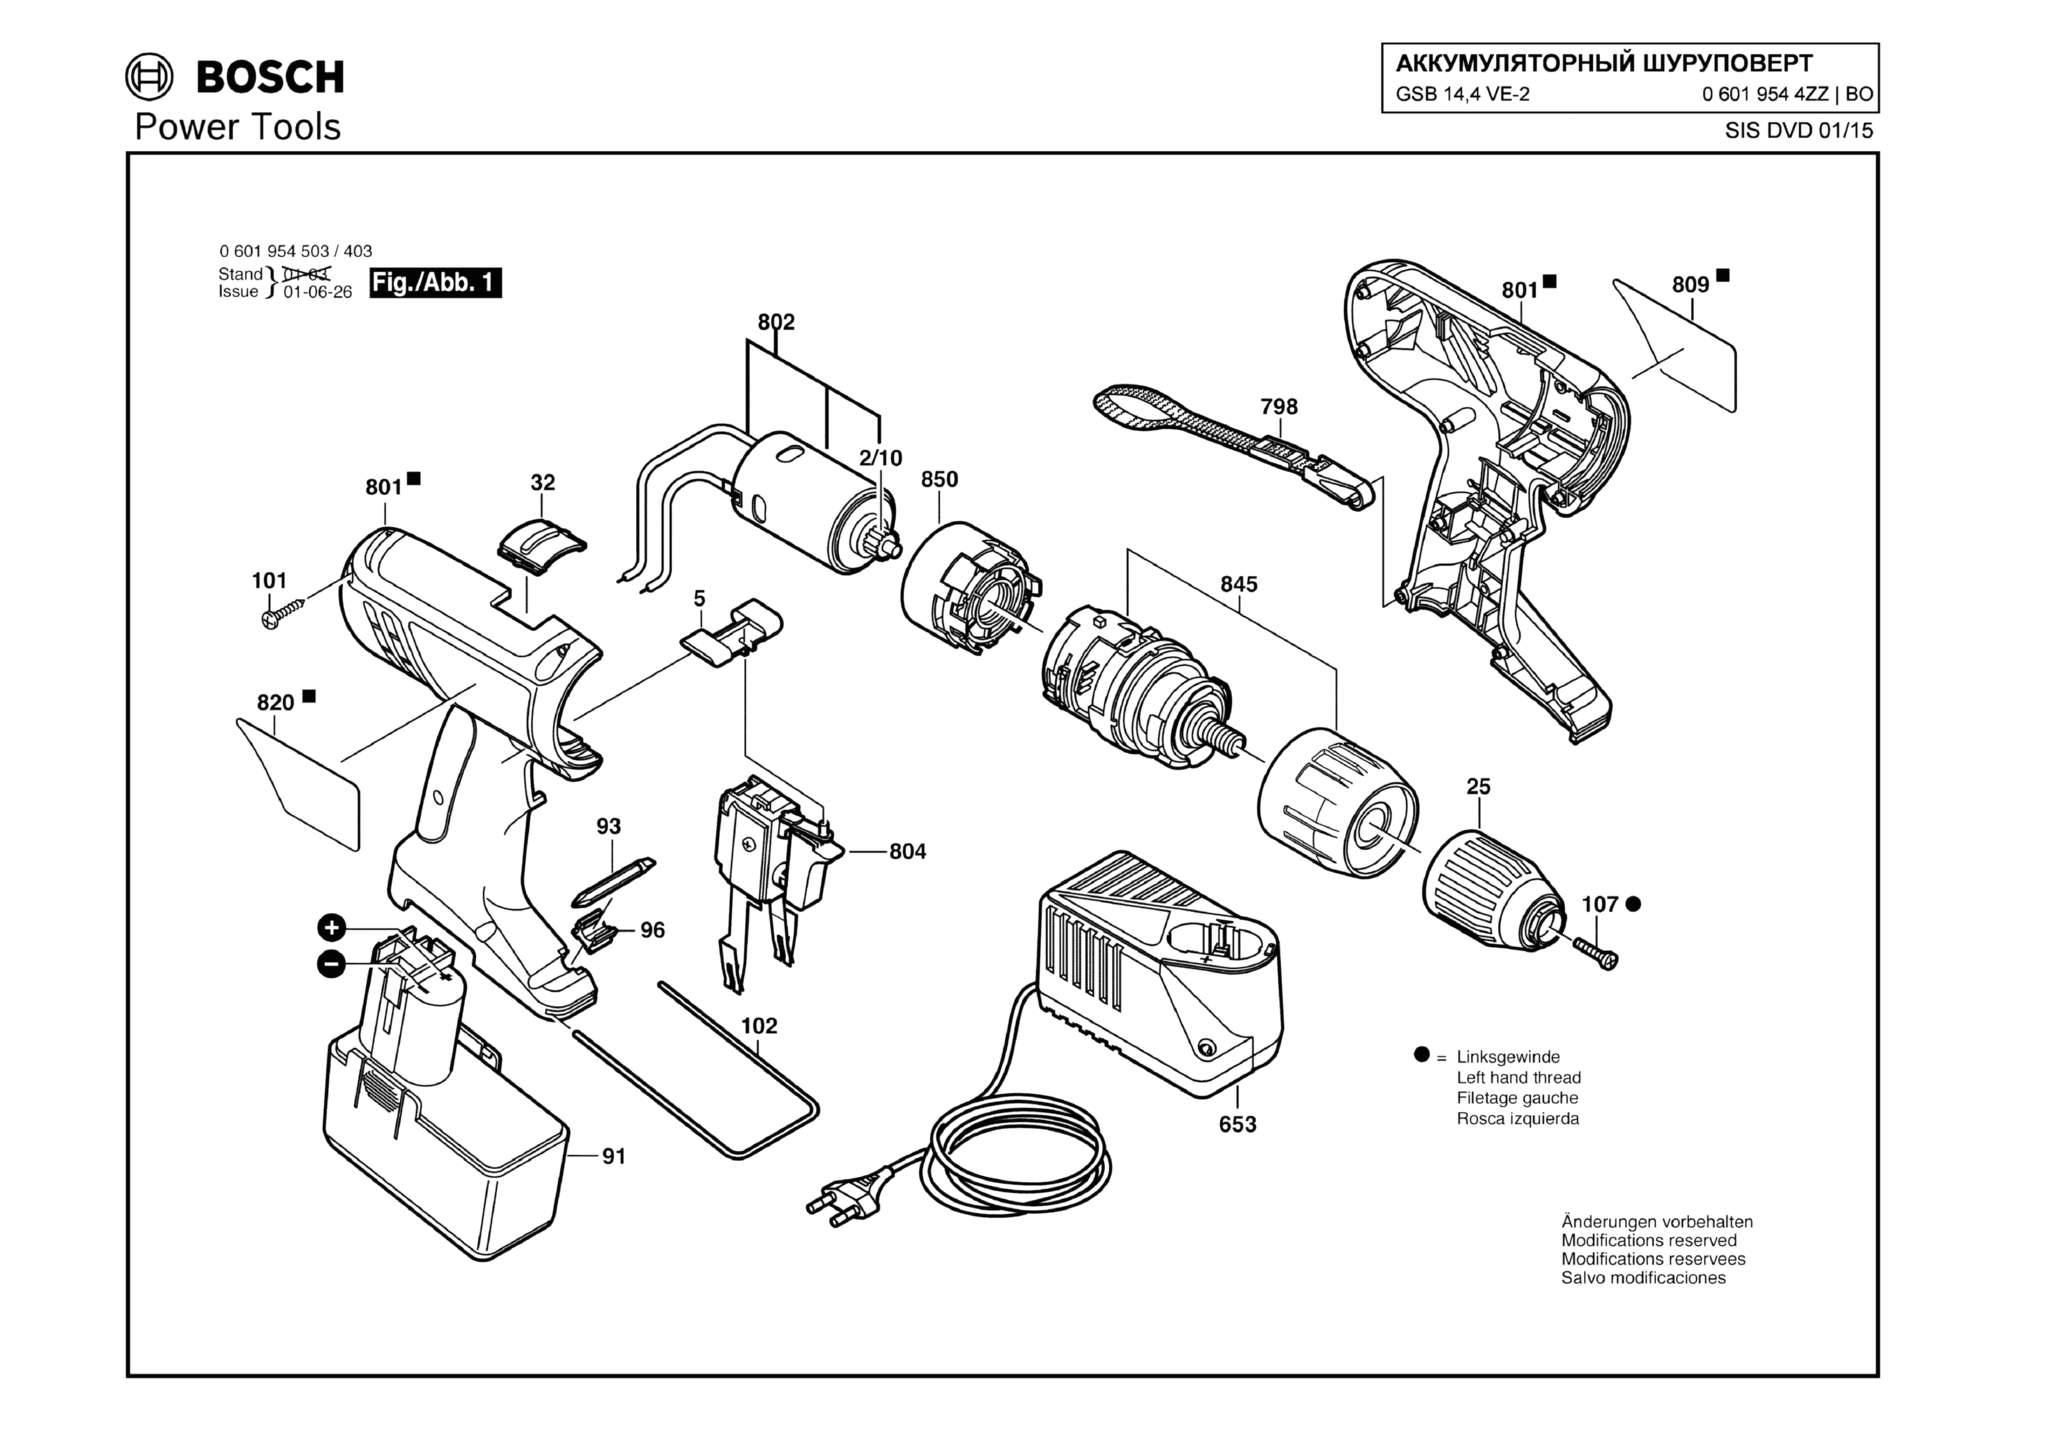 Запчасти, схема и деталировка Bosch GSB 14,4 VE-2 (ТИП 06019544ZZ)